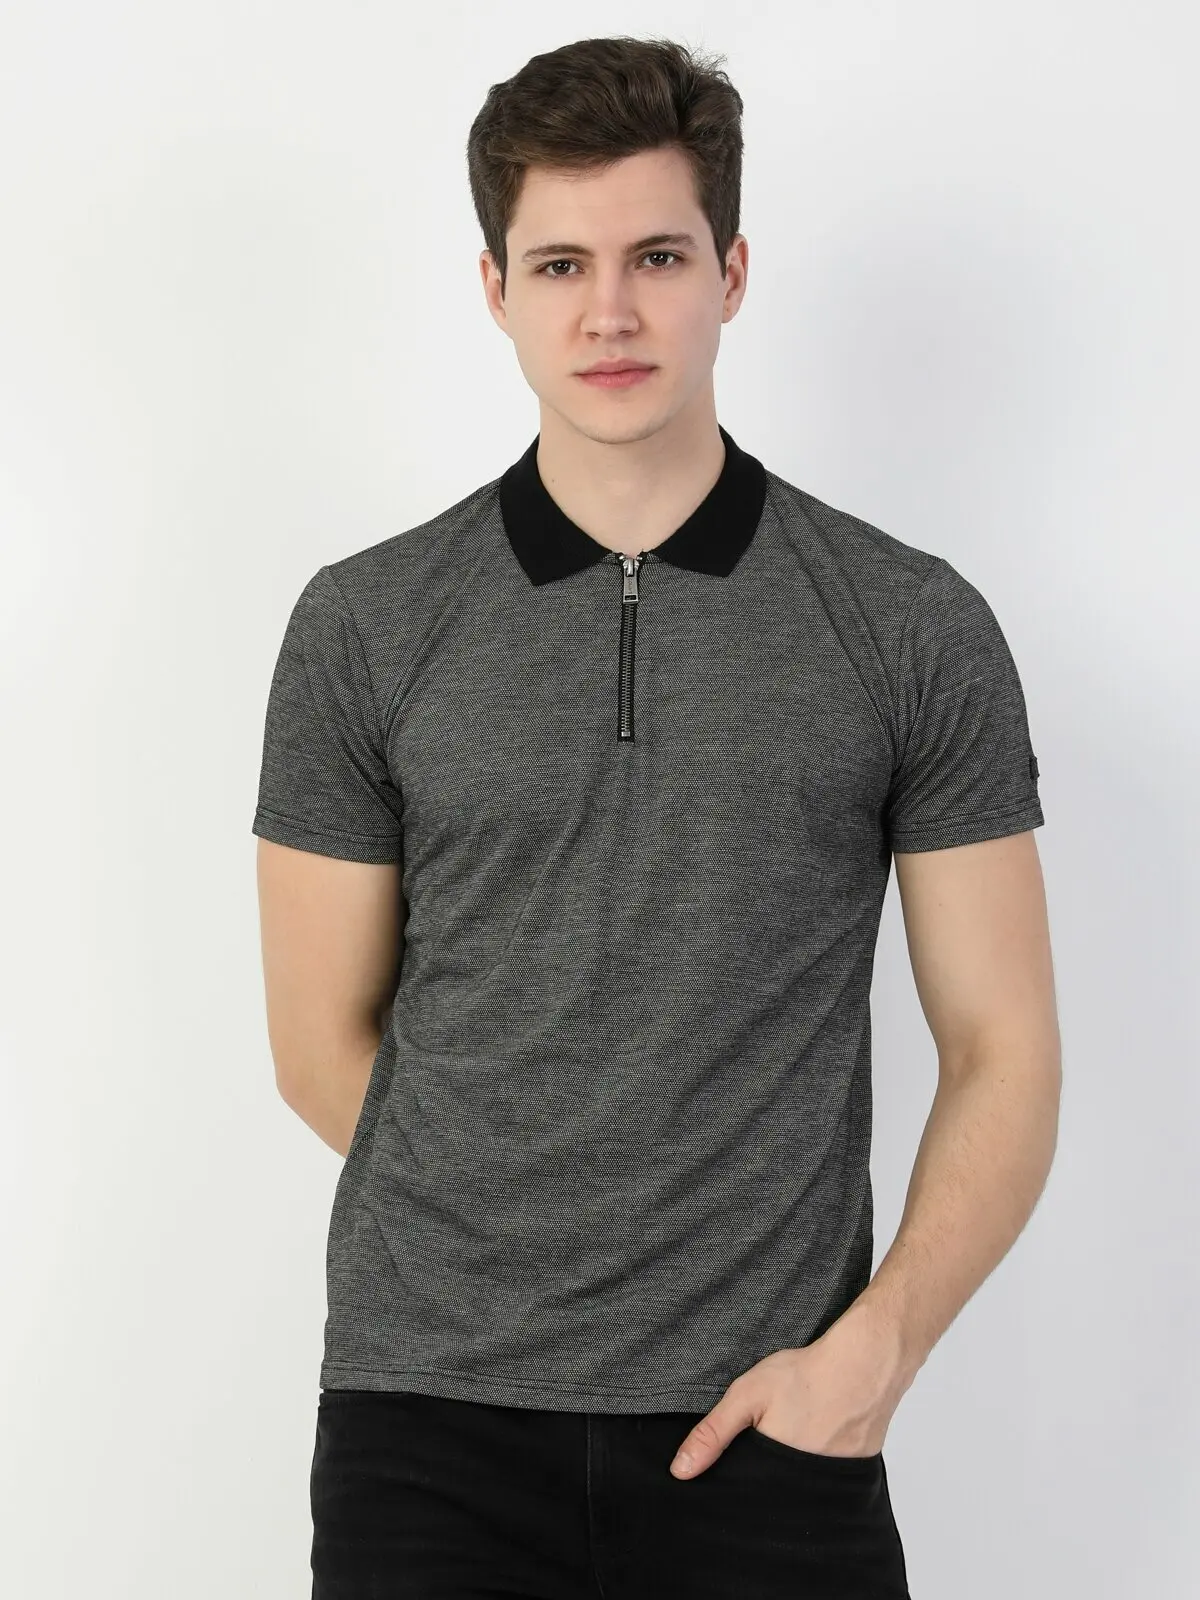 

Мужская футболка поло с коротким рукавом Colins, серая футболка поло с коротким рукавом, CL1046913